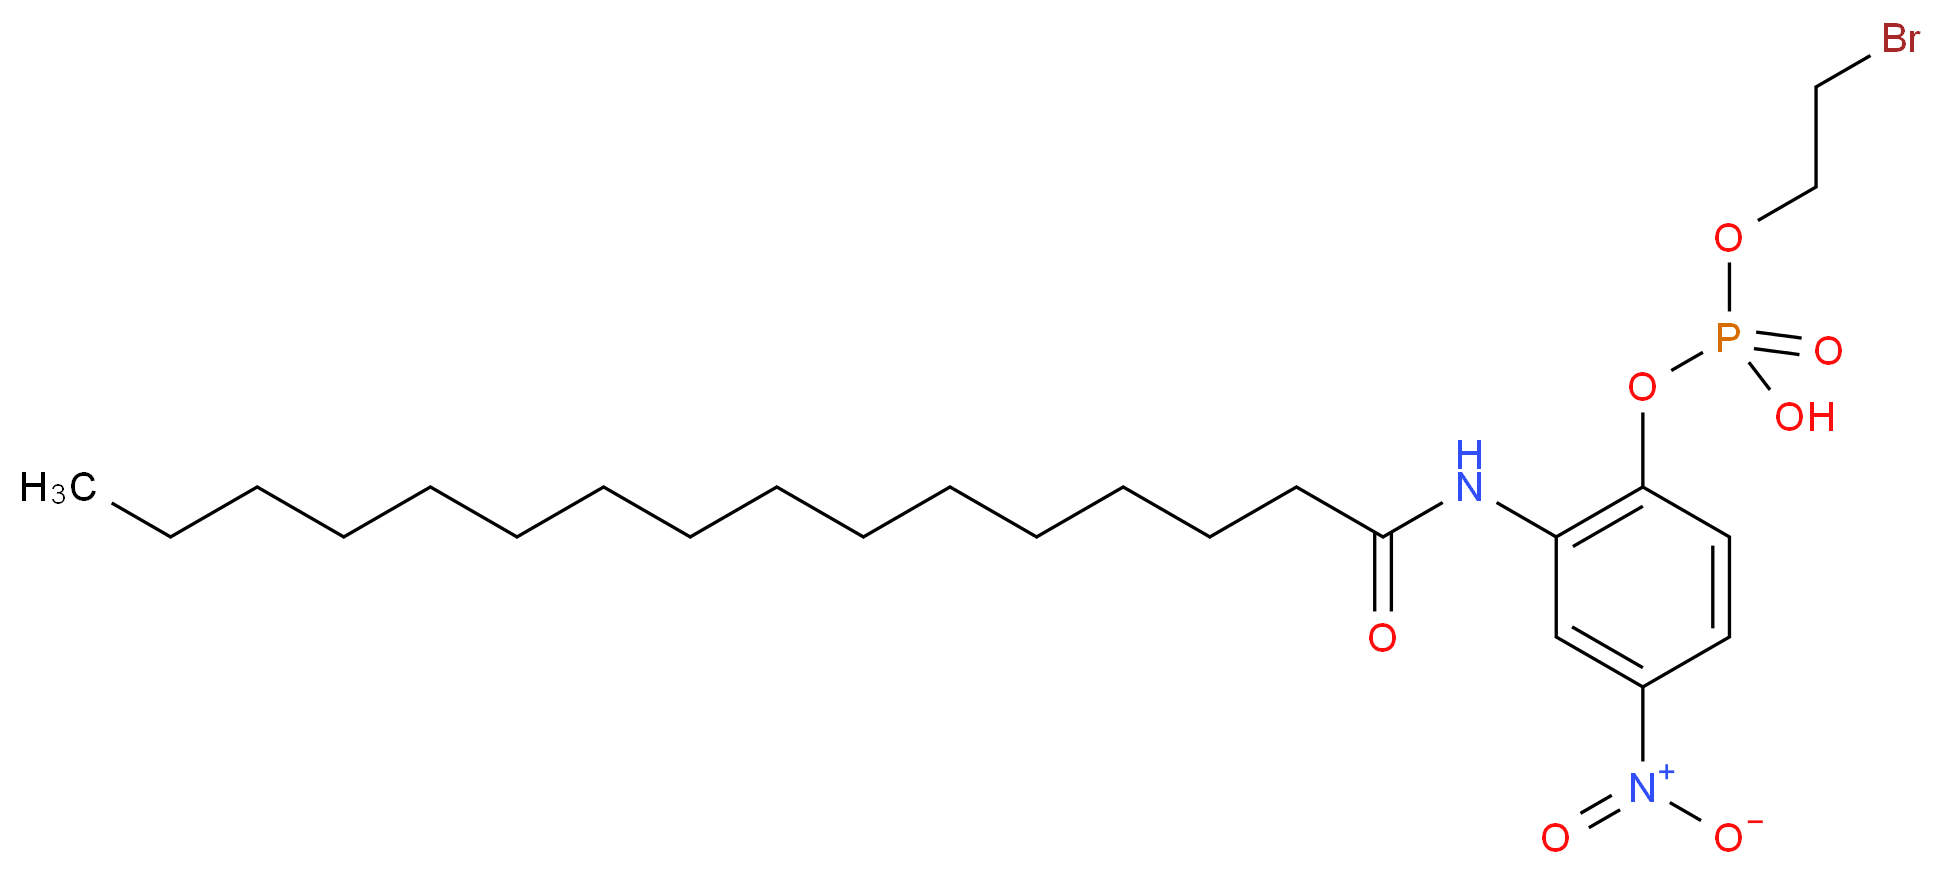 2'-(β-Bromoethylphosphoryl)-5'-nitrohexadecananilide_Molecular_structure_CAS_60301-90-8)